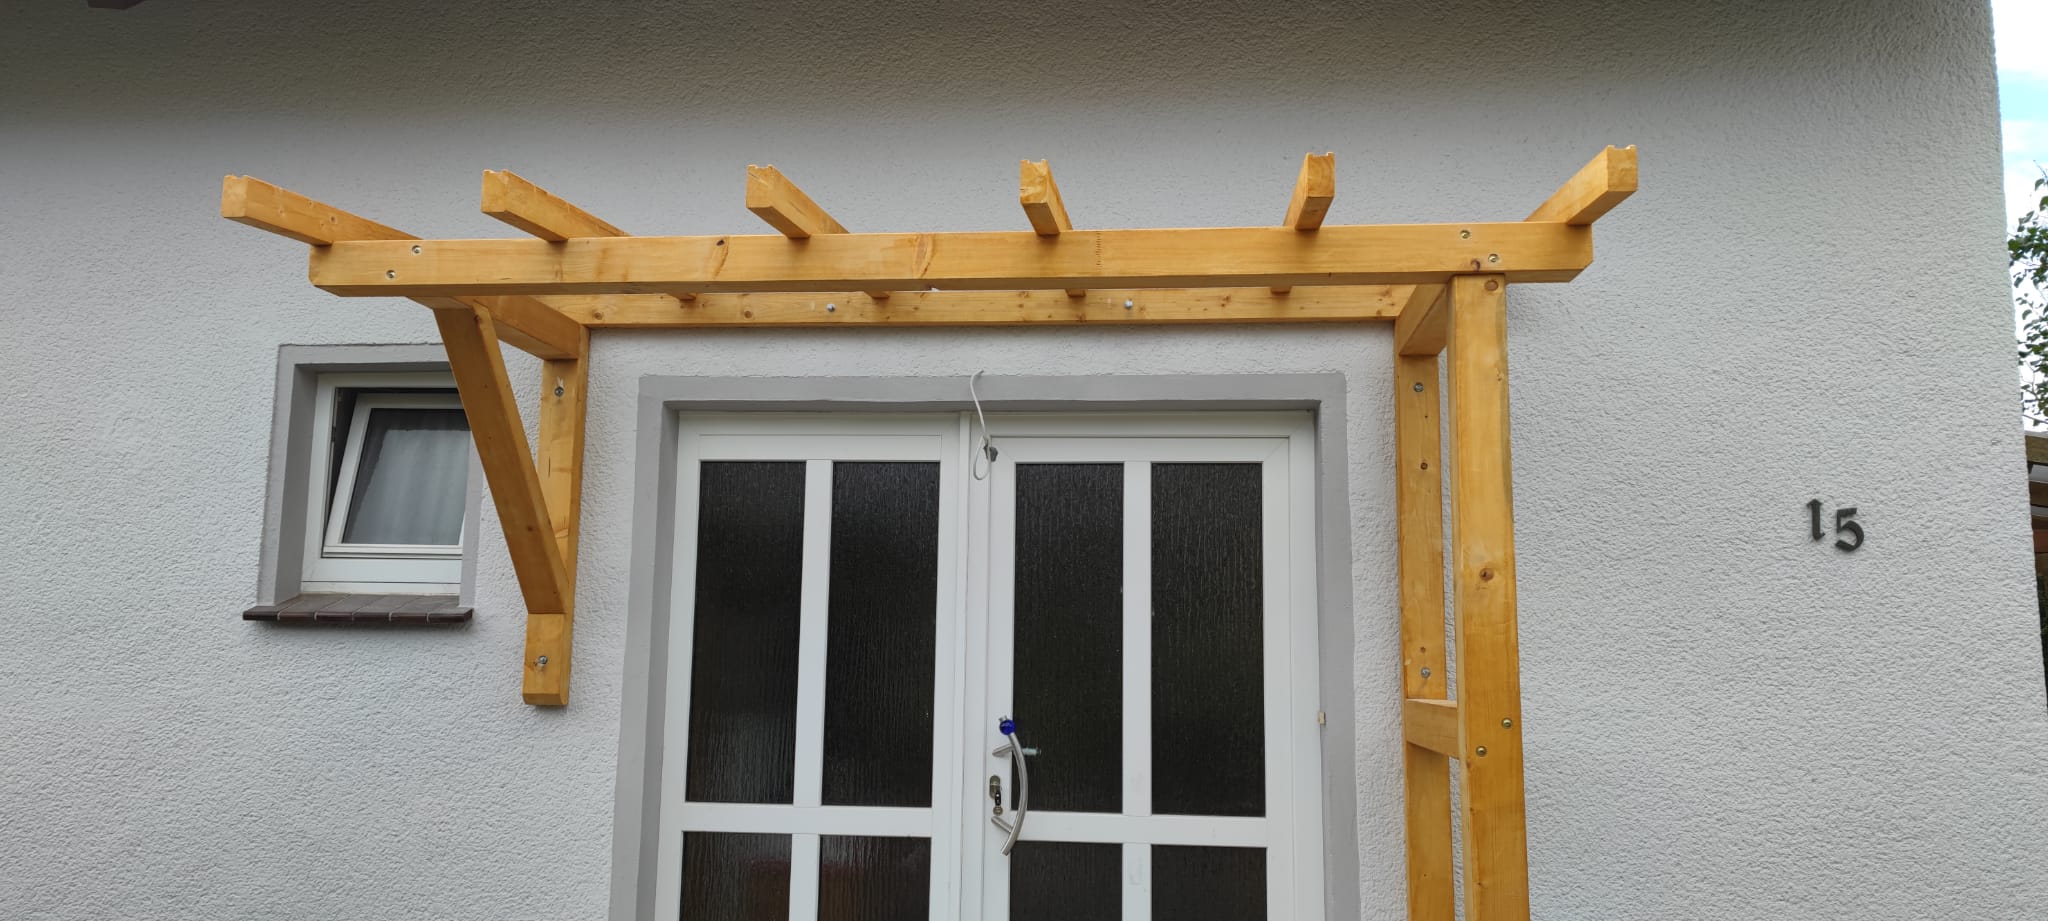 KVH-Holz mit SG-Sicherheitsglas Haustürüberdachung Vorne